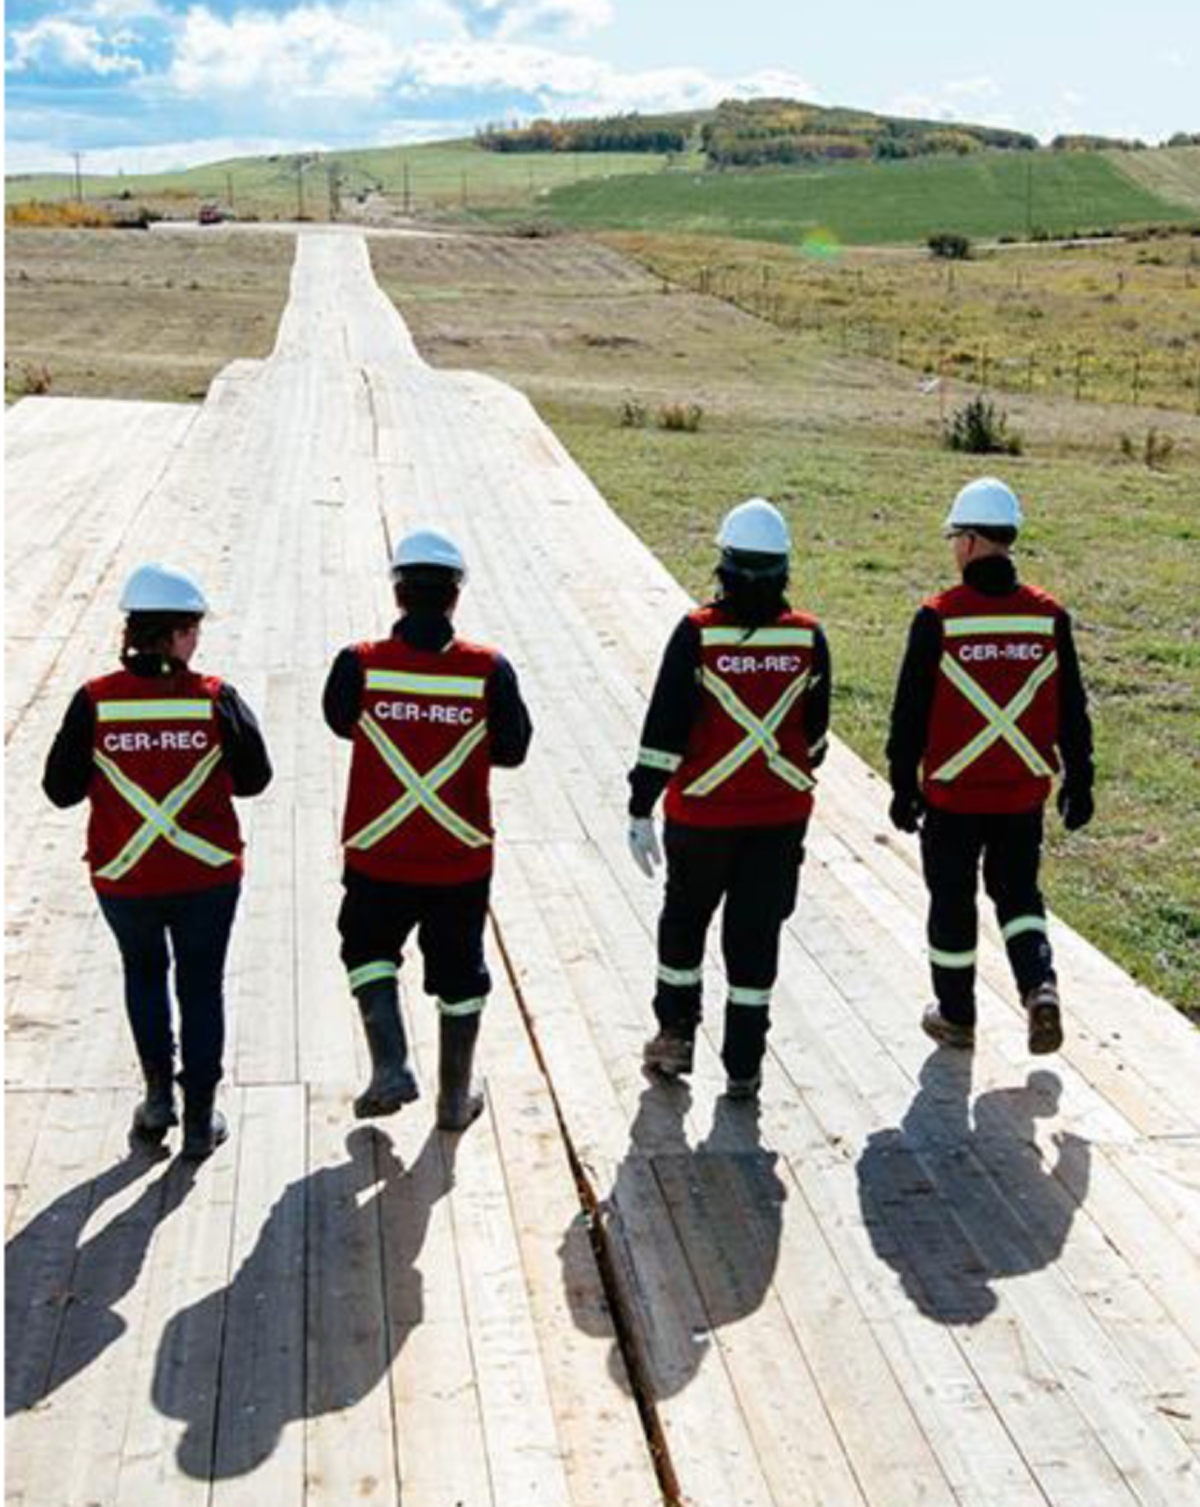 Figure 6 – CER inspectors walking along a boarded pathway.